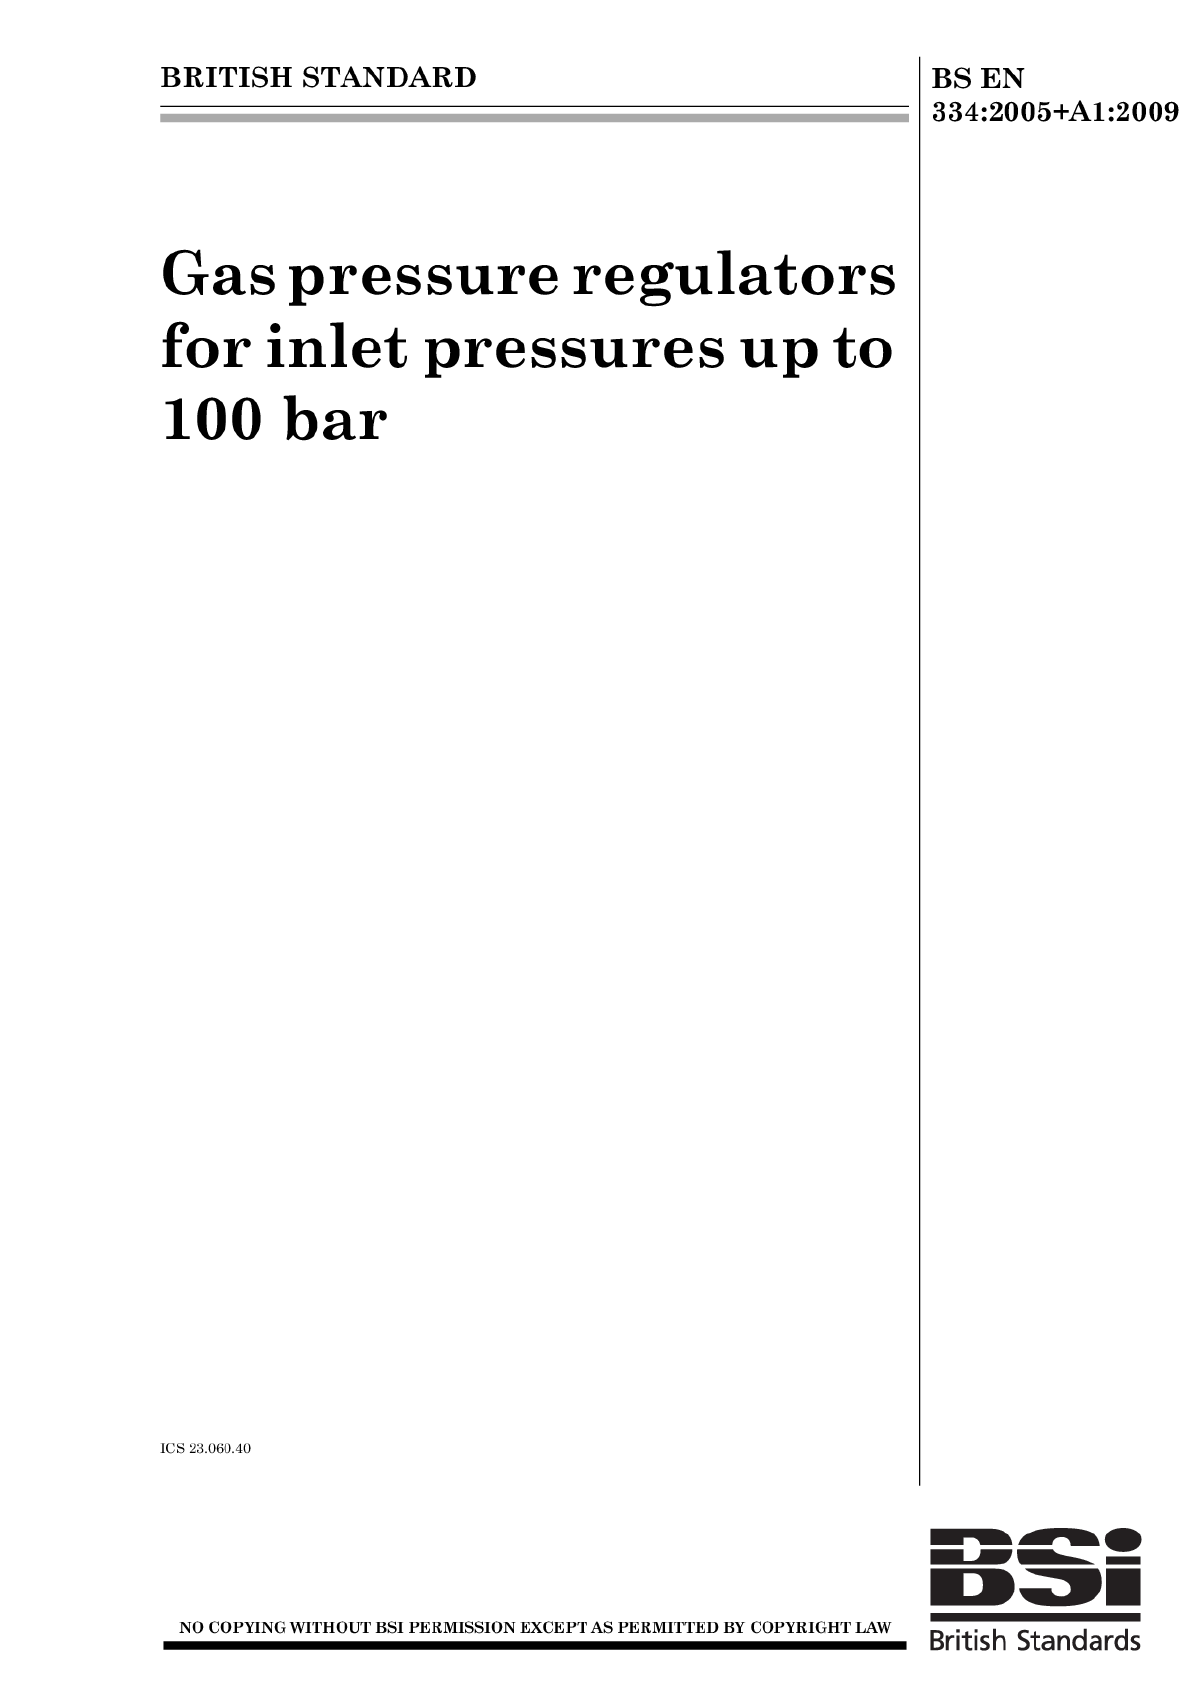 燃气调压器-EN334-2009